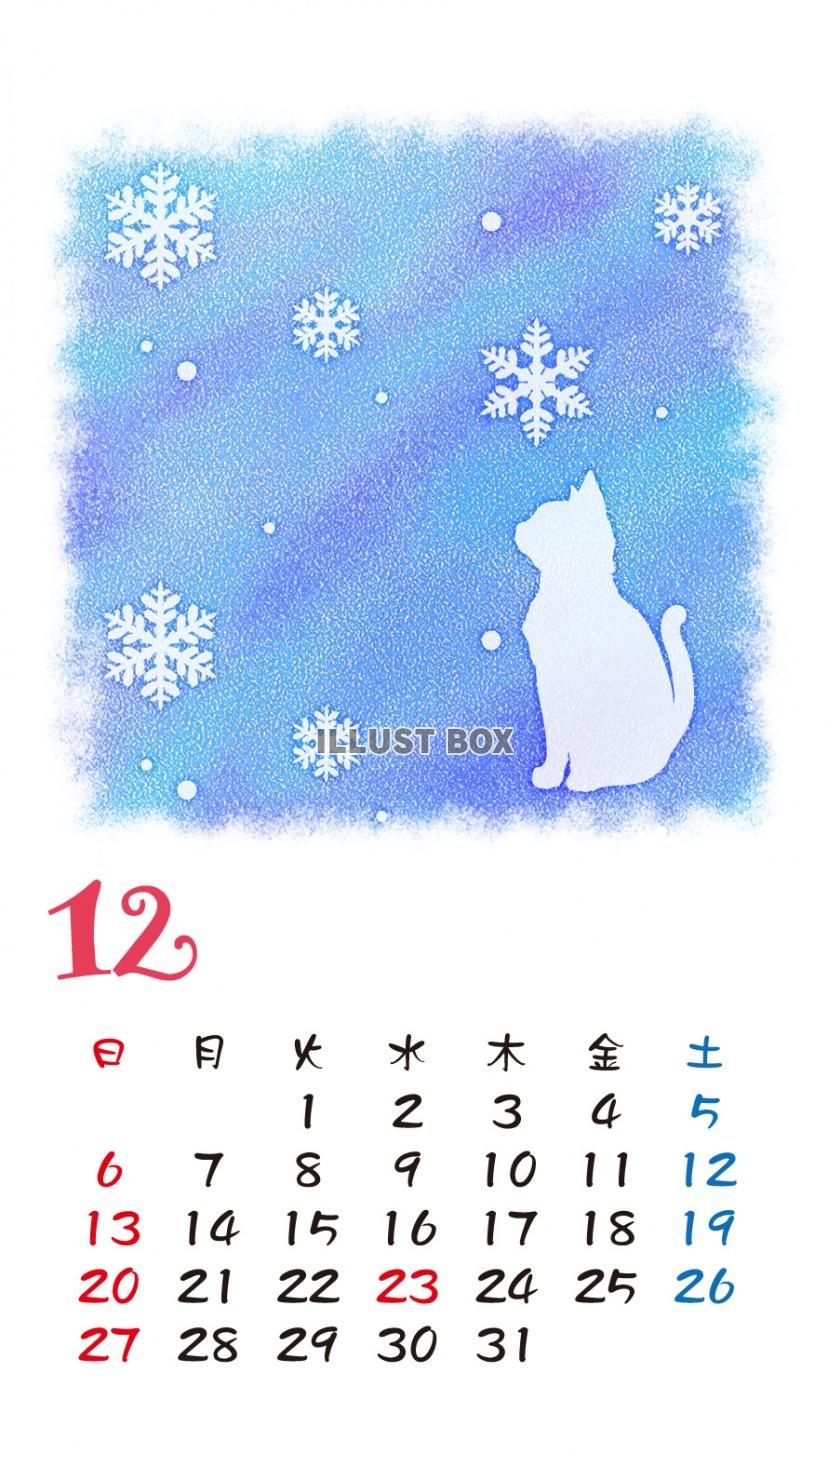 無料イラスト Iphone6用 カレンダー 猫シルエットパステル調 12